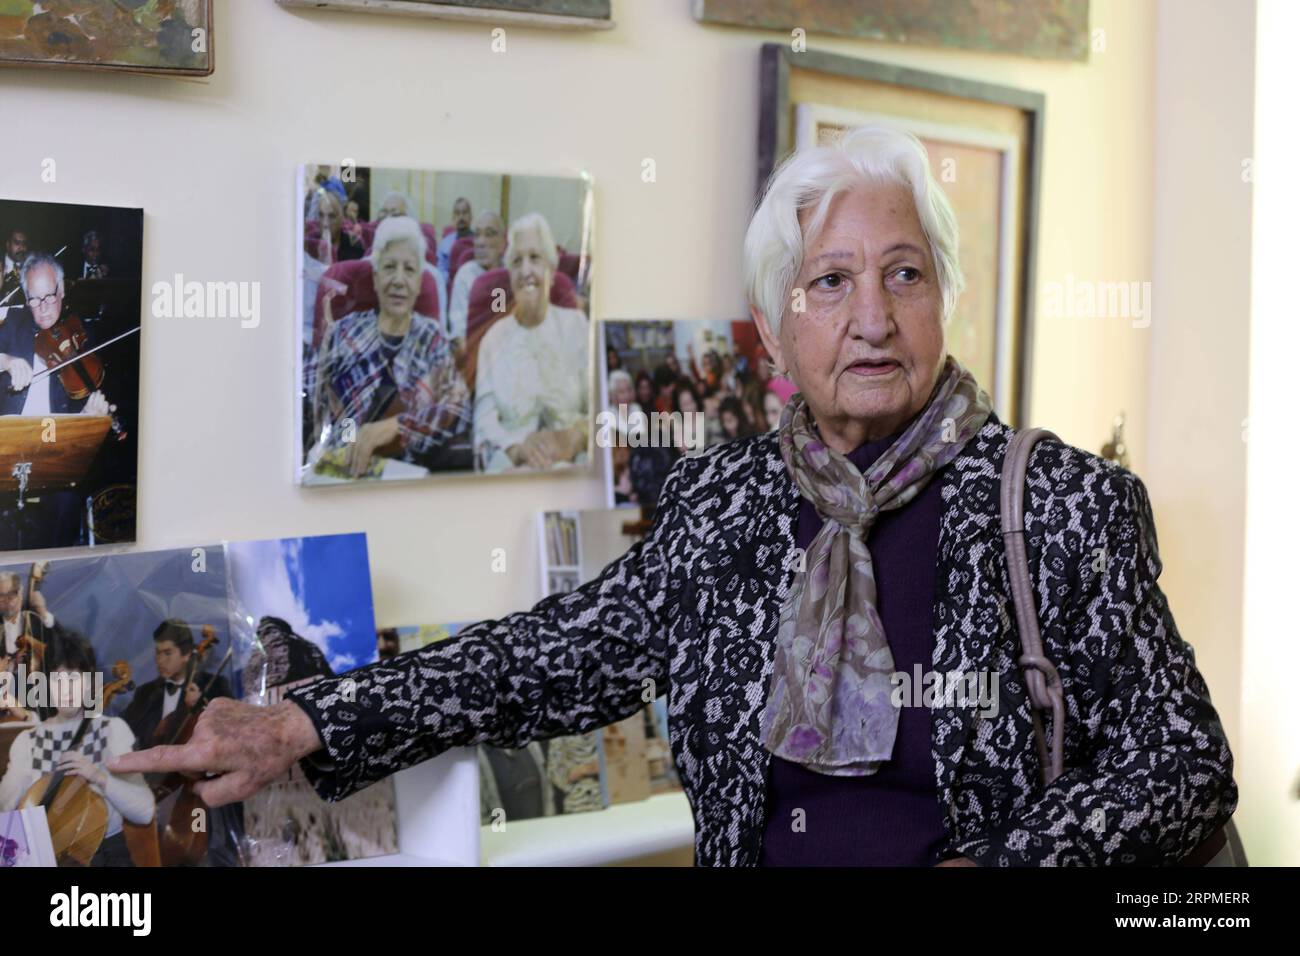 200210 -- BAGHDAD, 10 febbraio 2020 Xinhua -- la scrittrice irachena Safira Jamil Hafiz mostra una foto nella biblioteca della sua villa a Baghdad, Iraq, il 9 febbraio 2020. In una villa in un quartiere di lusso nel centro di Baghdad, una vecchia scrittrice irachena era ansiosa di offrire un'iniziativa volta a promuovere il movimento culturale in Iraq dopo decenni di guerre nel paese distrutto dalla guerra. Safira Jamil Hafiz, 89 anni, ha approfittato della posizione tranquilla della sua villa nel quartiere di Karrada e ha dedicato il piano superiore del suo edificio a due piani per essere una biblioteca pubblica per i lettori di libri, compresi gli studenti, per divertirsi con la lettura Foto Stock